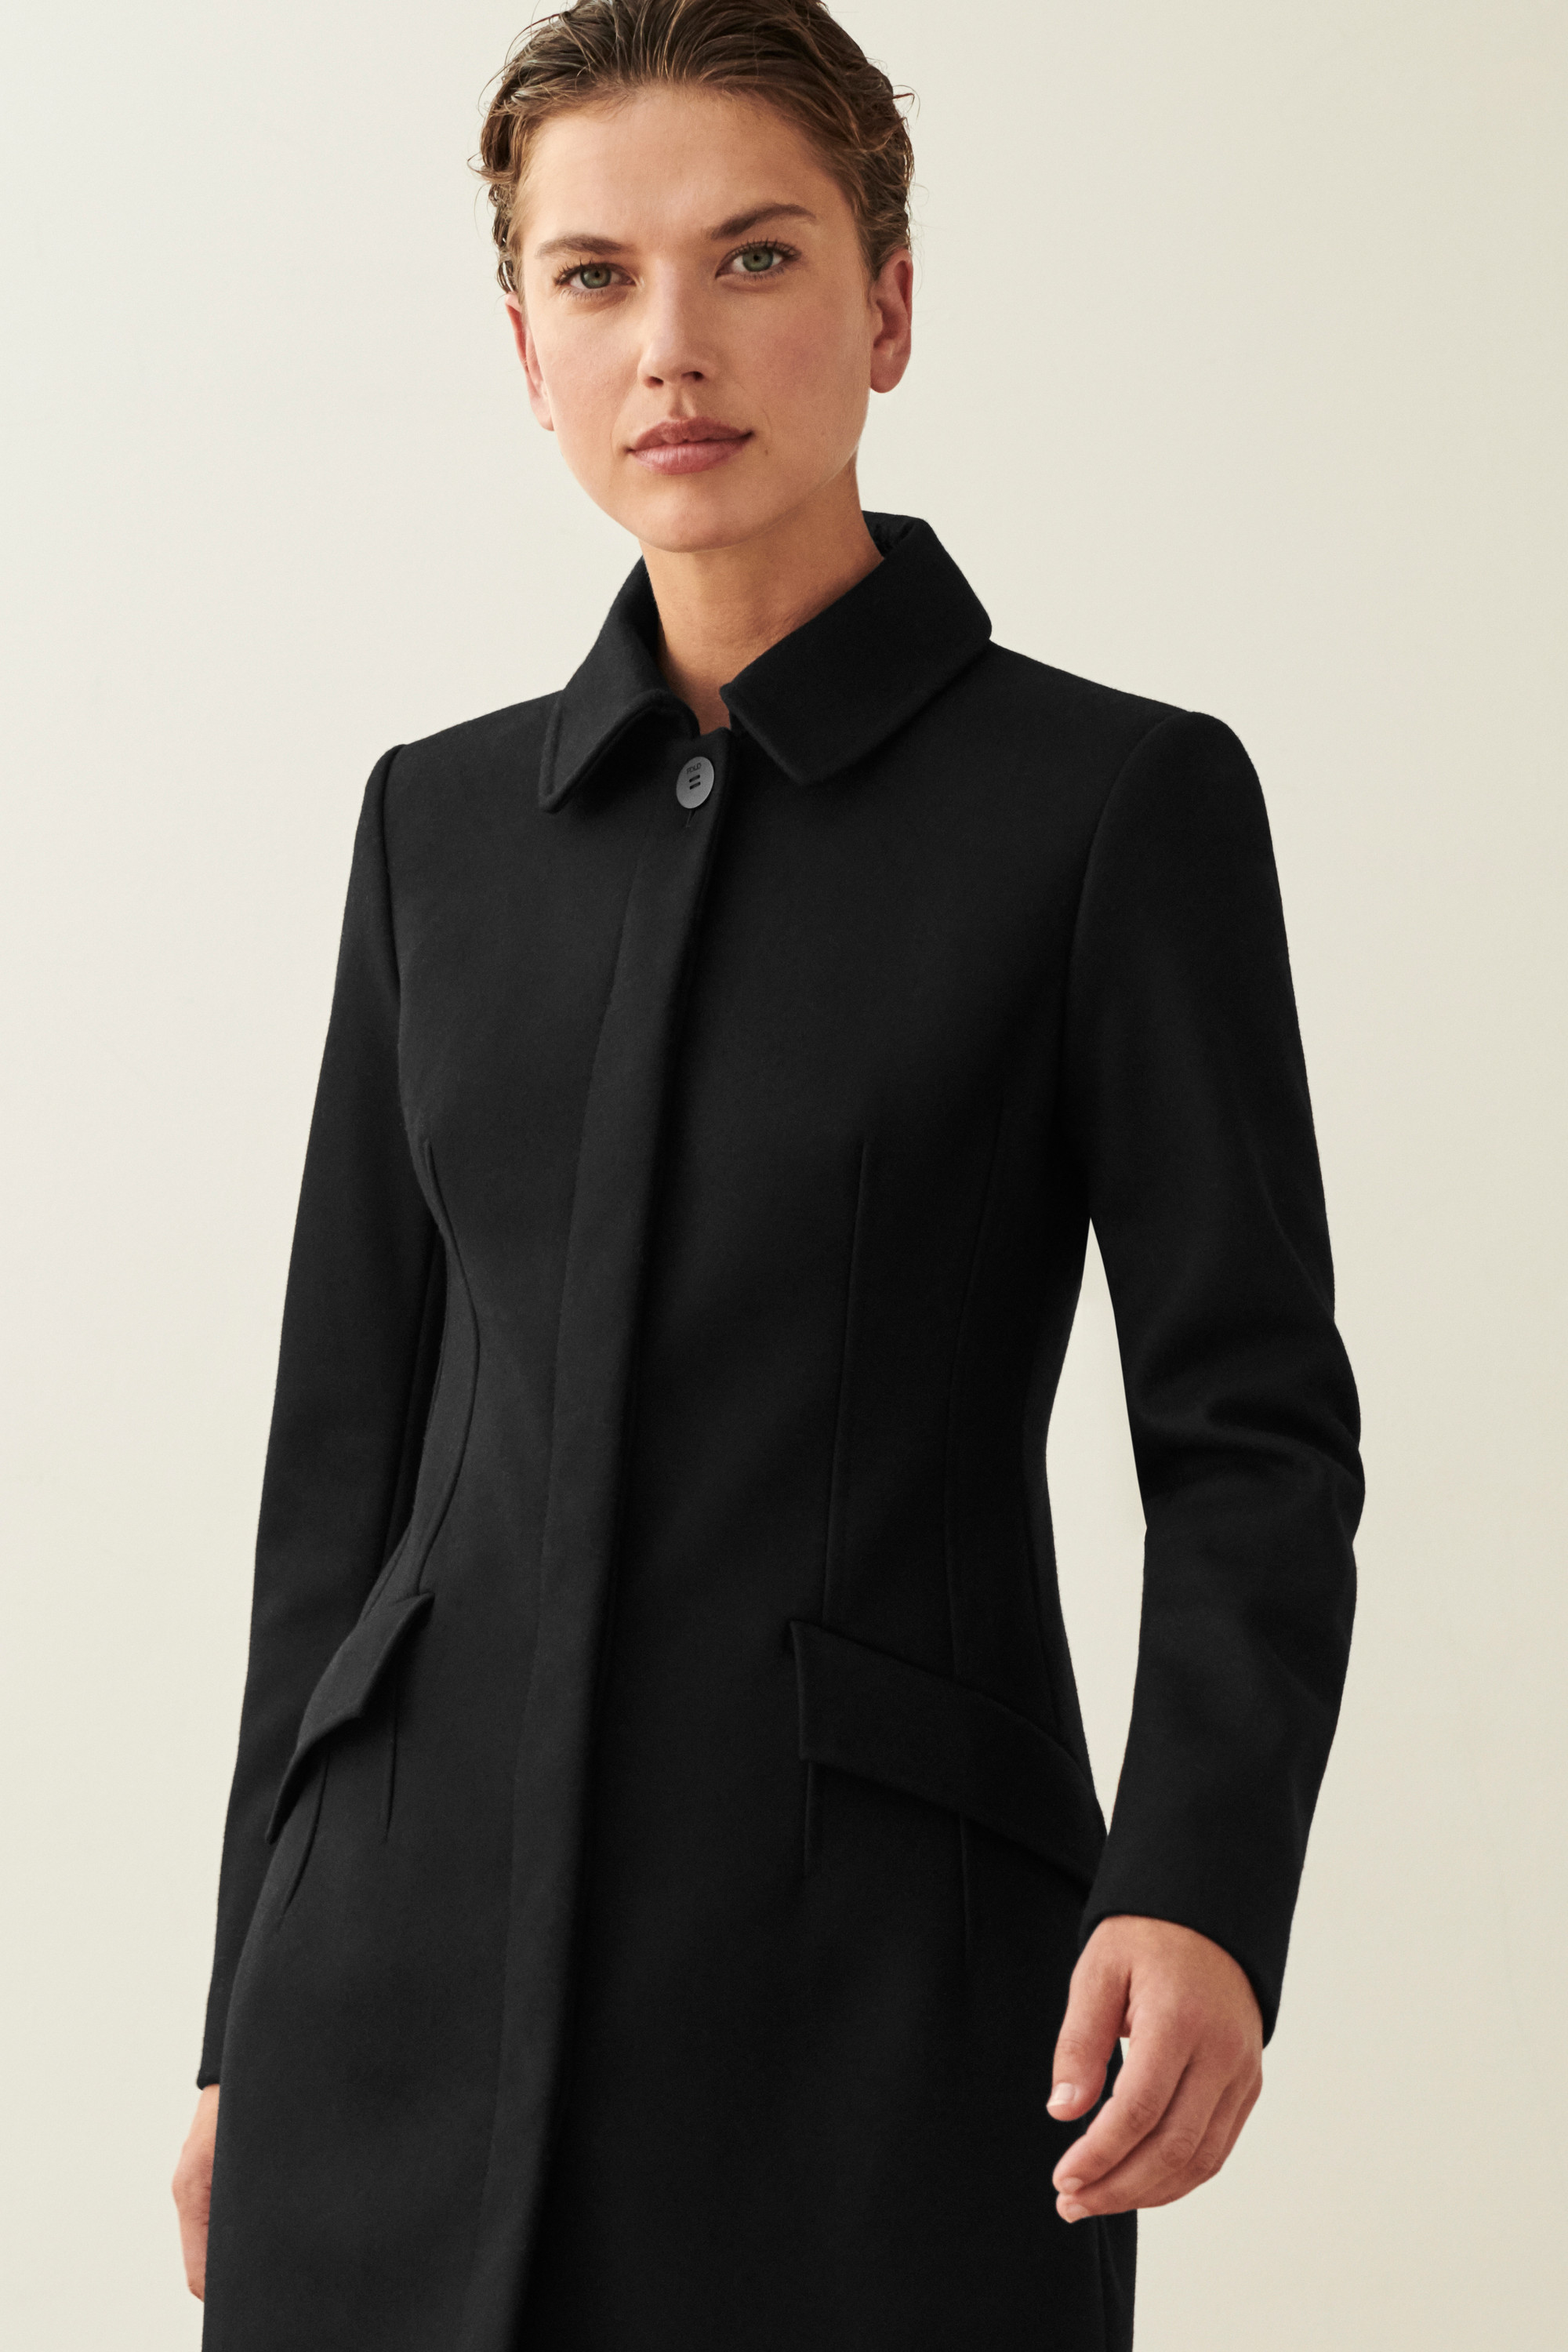 Clerkenwell Coat Black Wool Blend - Welcome to the Fold LTD